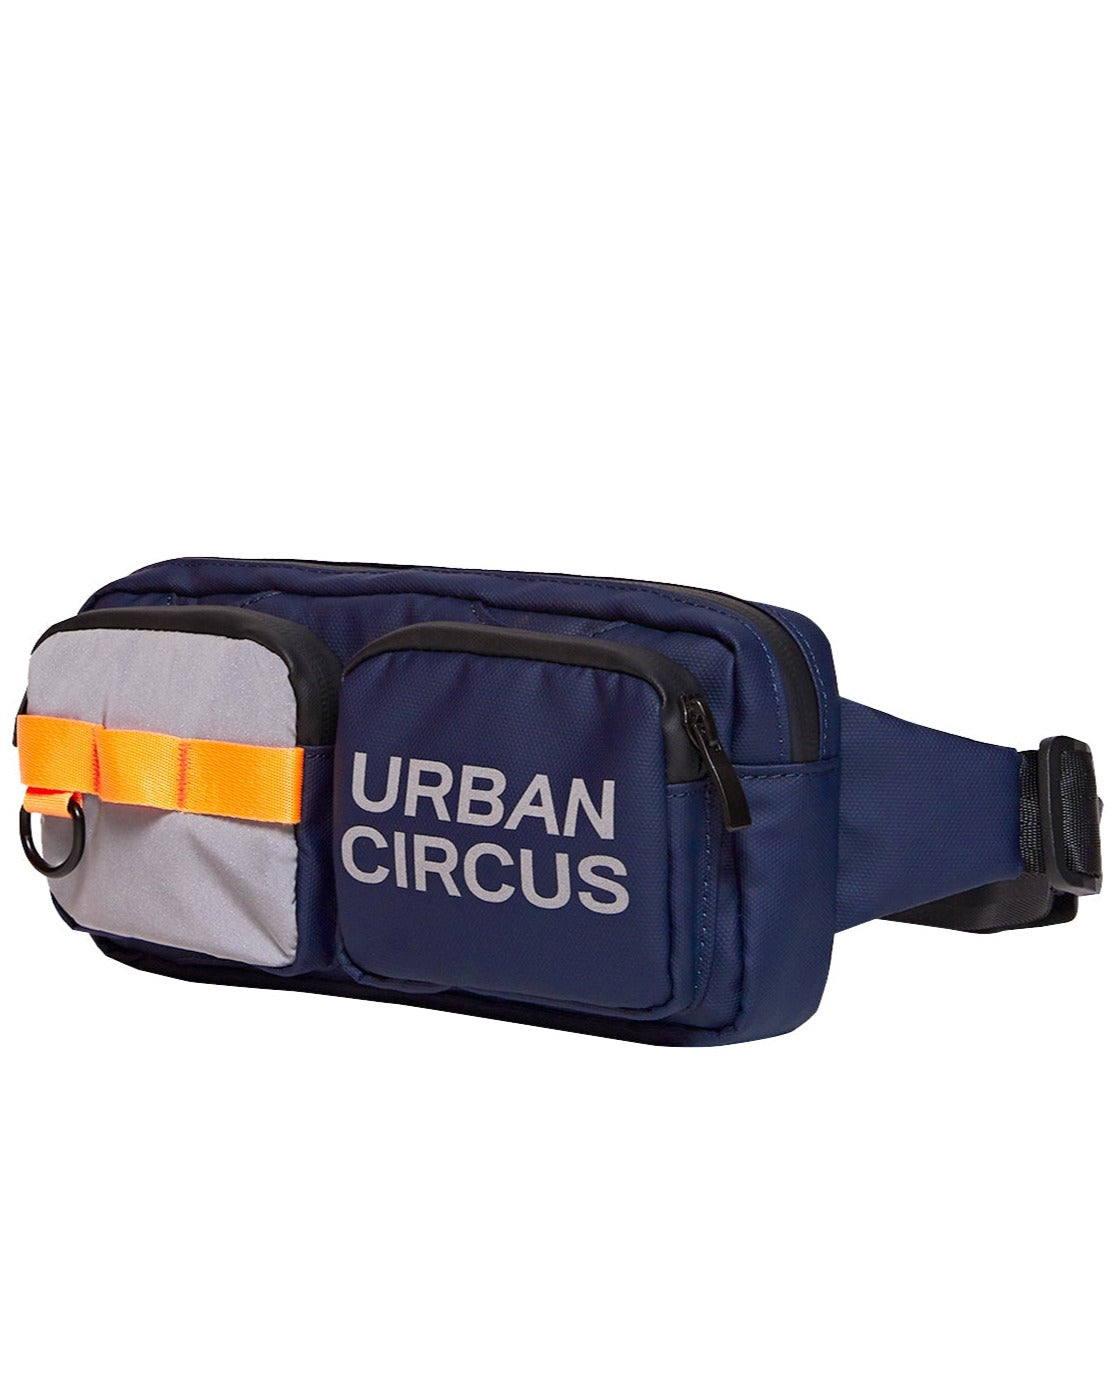 sacoche banane vélo urban circus bleu marine